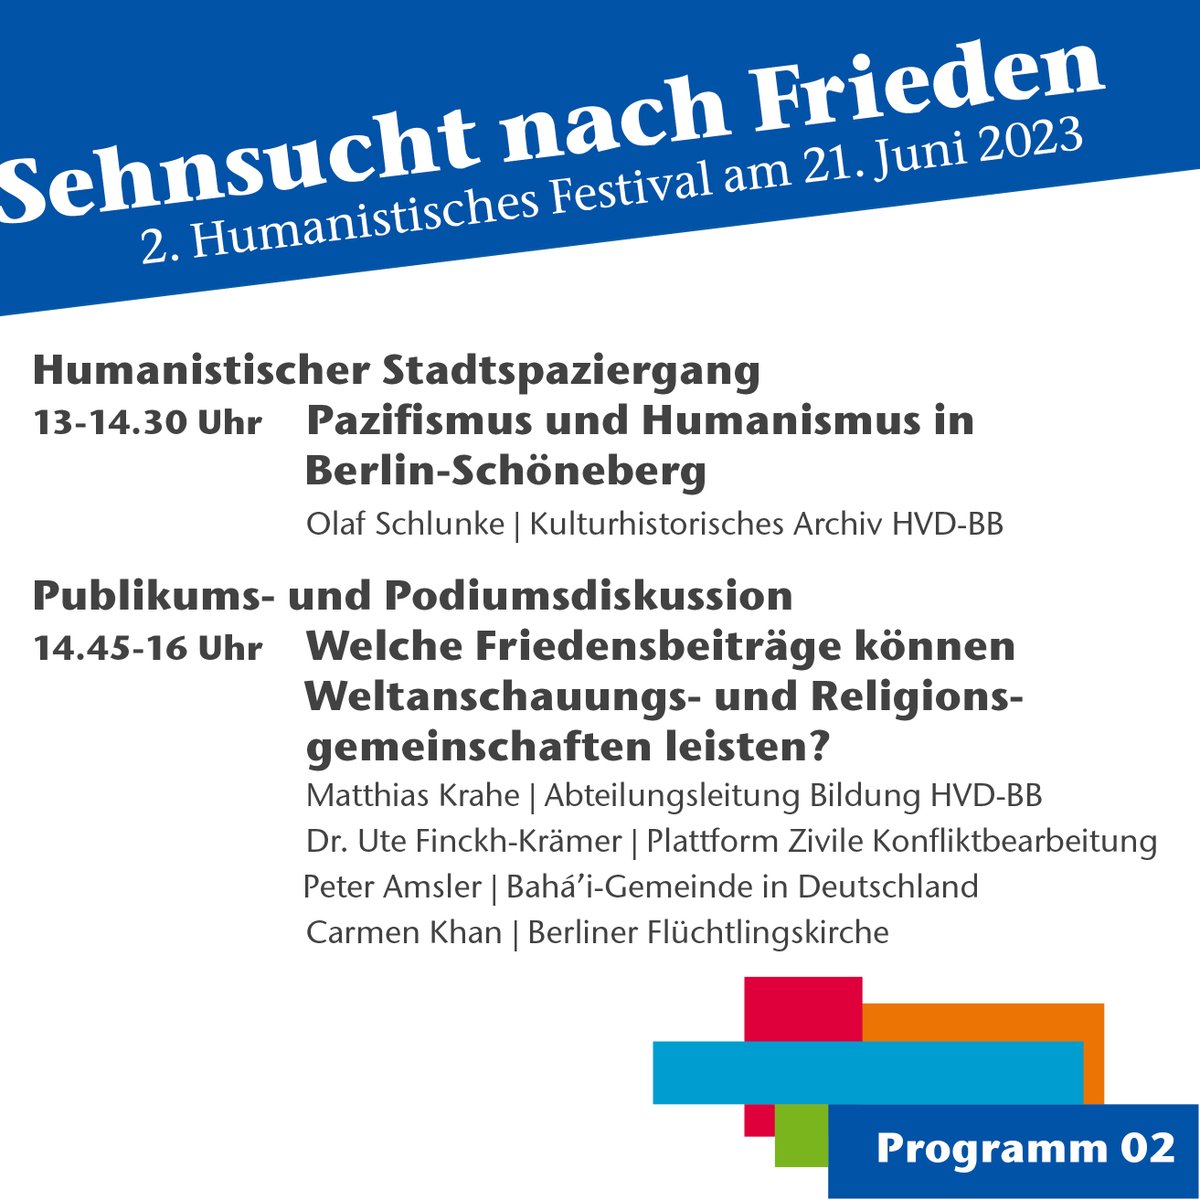 Unser Festivalprogramm steht! Wir freuen uns auf viele tolle Gäste aus Kultur, Wissenschaft & Zivilgesellschaft. Wir diskutieren über Pazifismus, Friedensarbeit in Berlin & darüber, welchen Beitrag Religions- & Weltanschauungsgemeinschaften dafür leisten können #Welthumanistentag